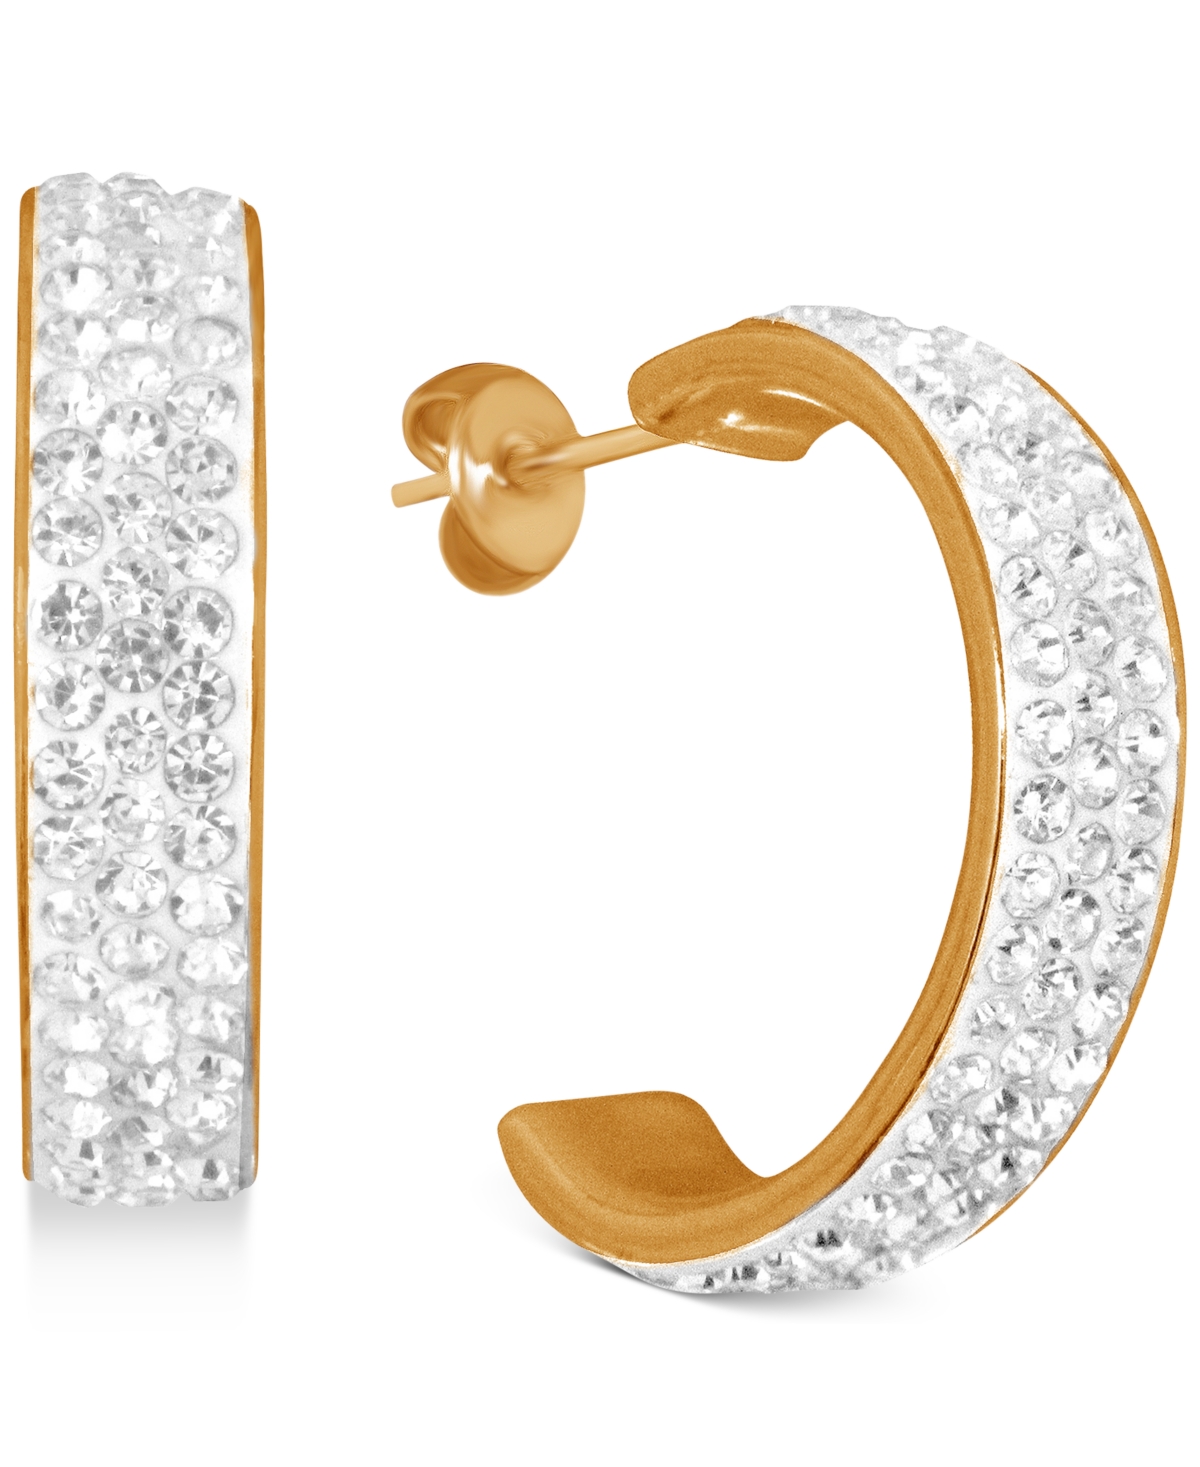 Crystal C-Hoop Earrings in Silver-Plate, Rose Gold Plate or Gold Plate - Rose Gold